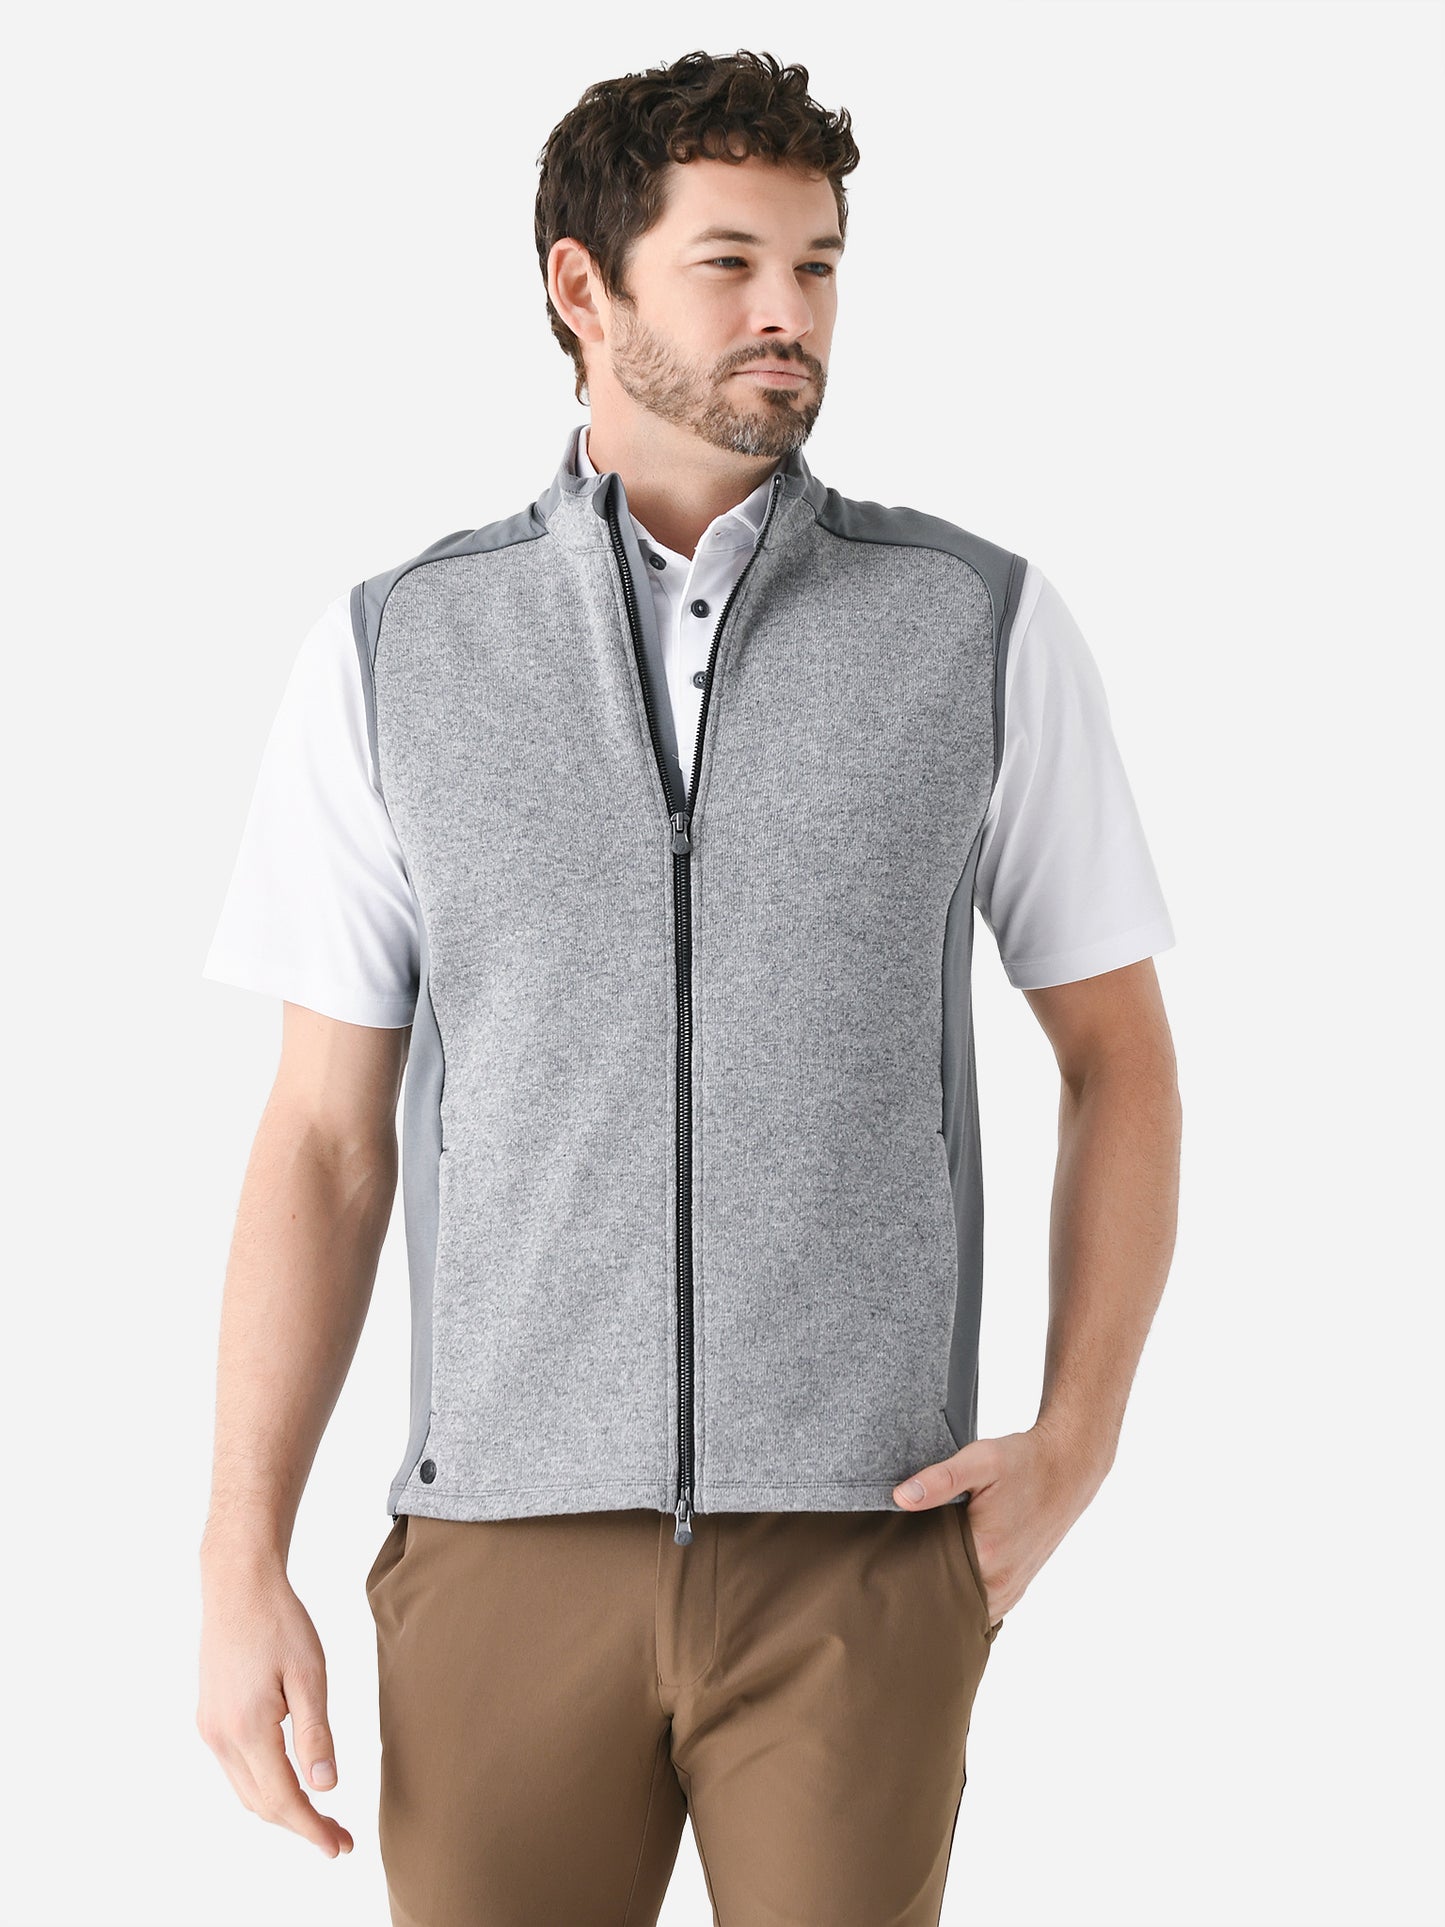 Greyson Men's Sequoia Luxe Vest